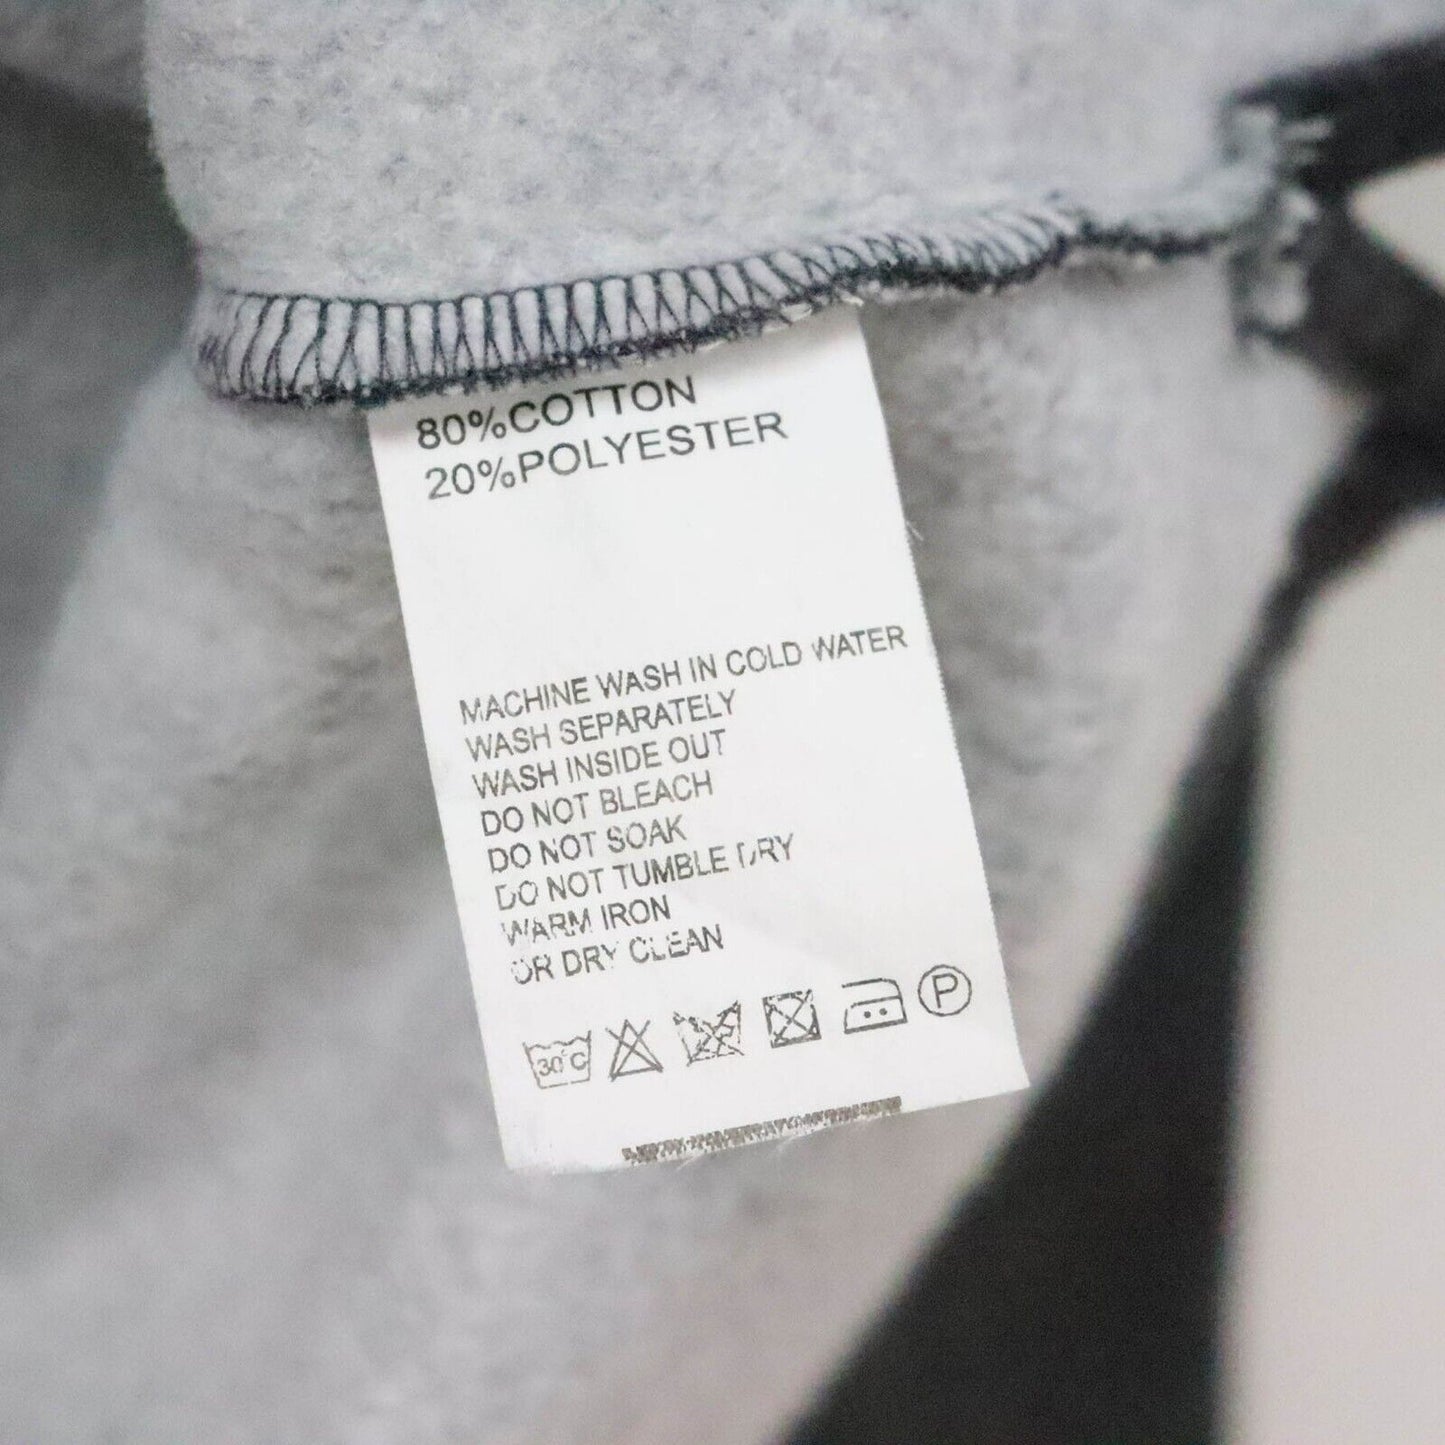 Balenciaga 1/4 Zip Sweatshirt Size XL